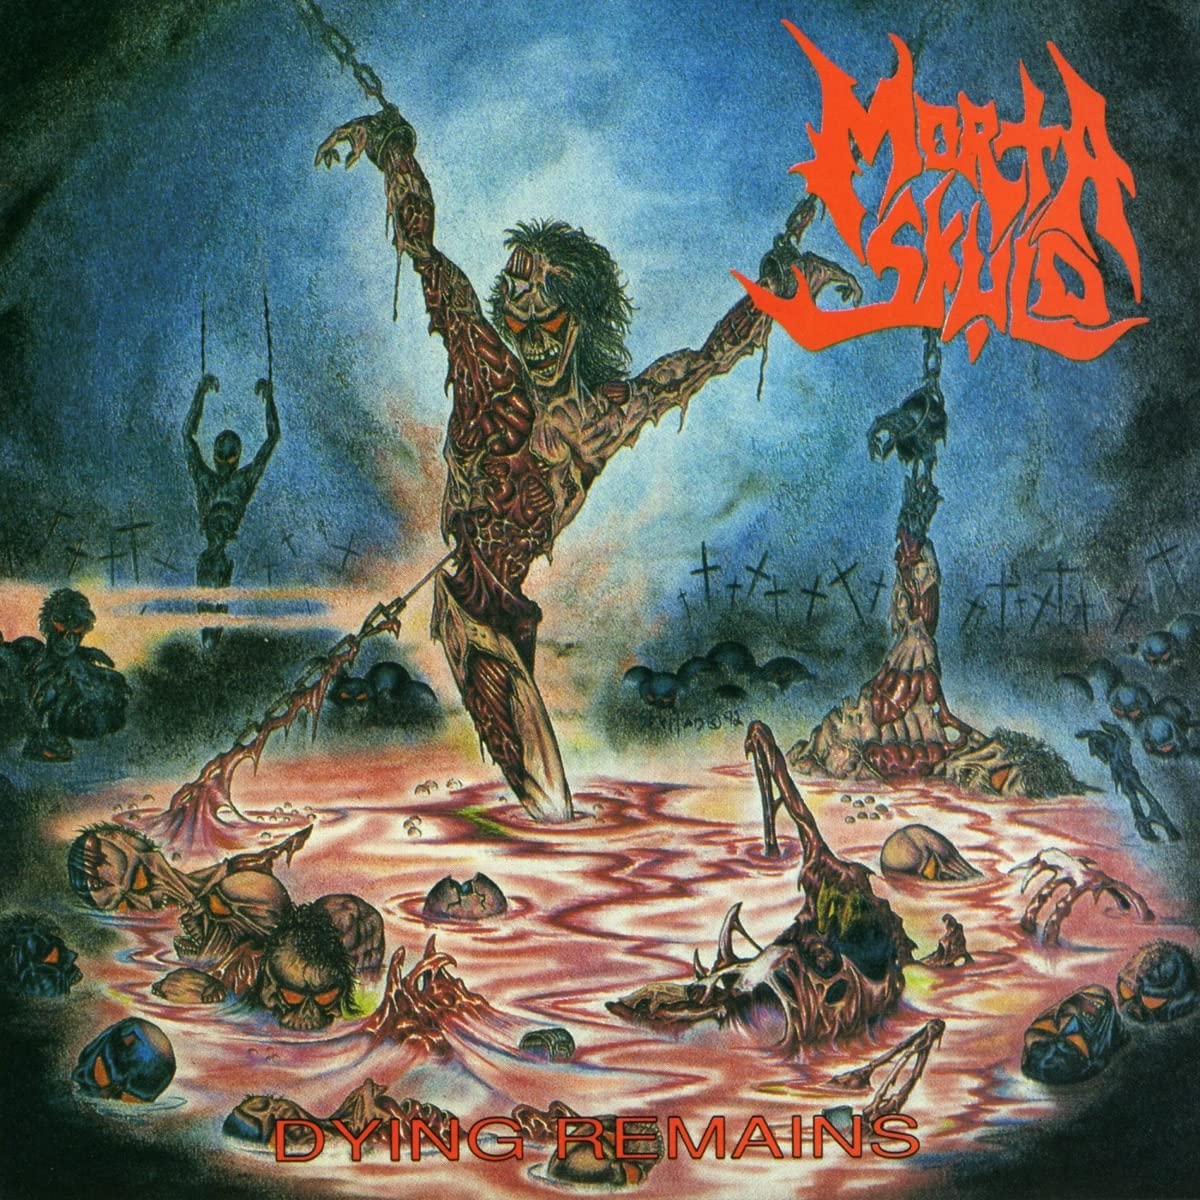 Morta Skuld Dying Remains 30th Anniversary 2CD [Importado]